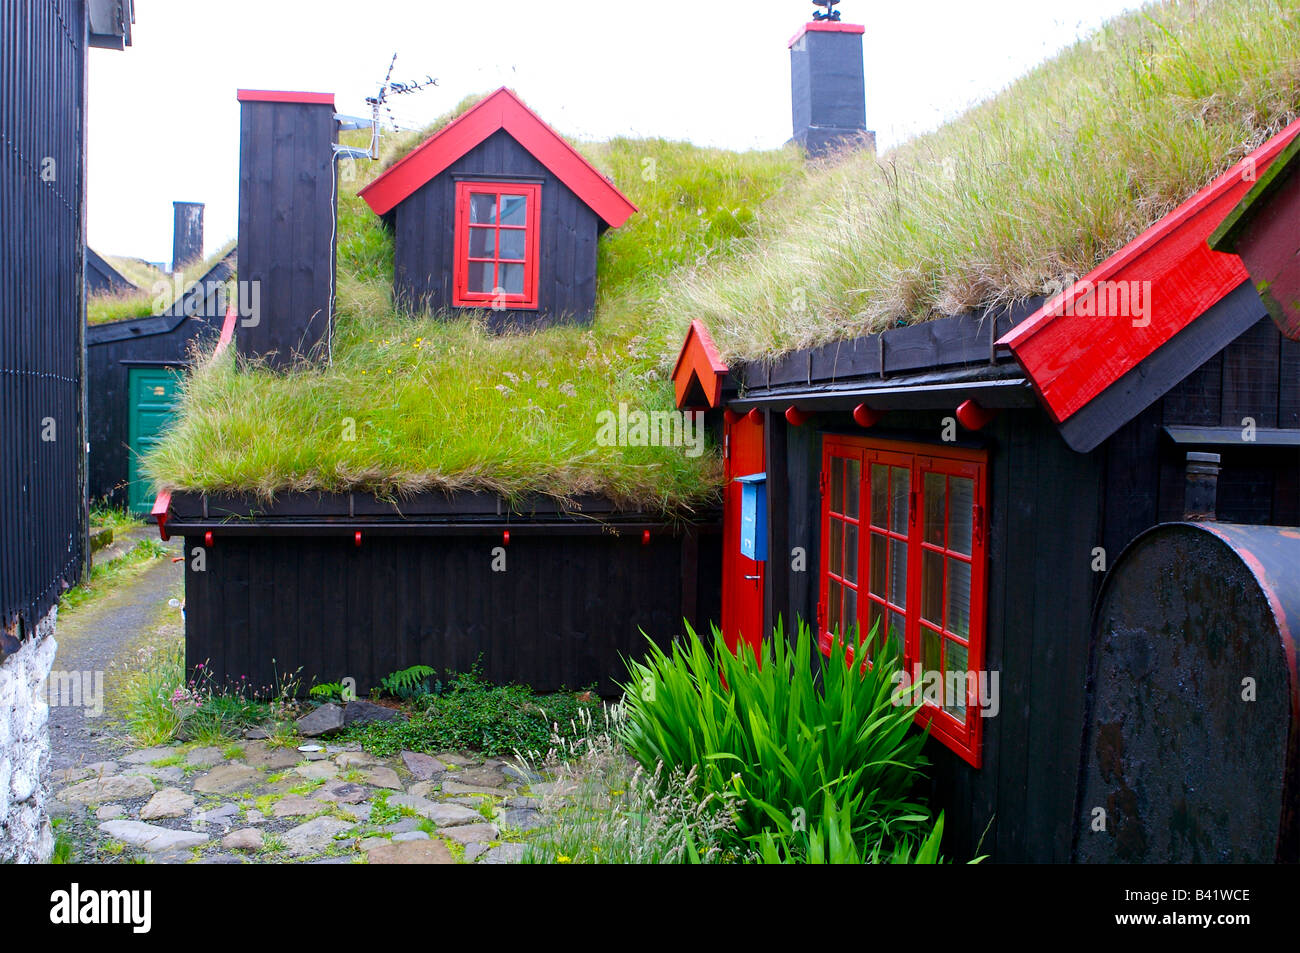 L'isolation de la toiture, chalet toop sous la forme d'herbe et le gazon - Iles Feroe Banque D'Images